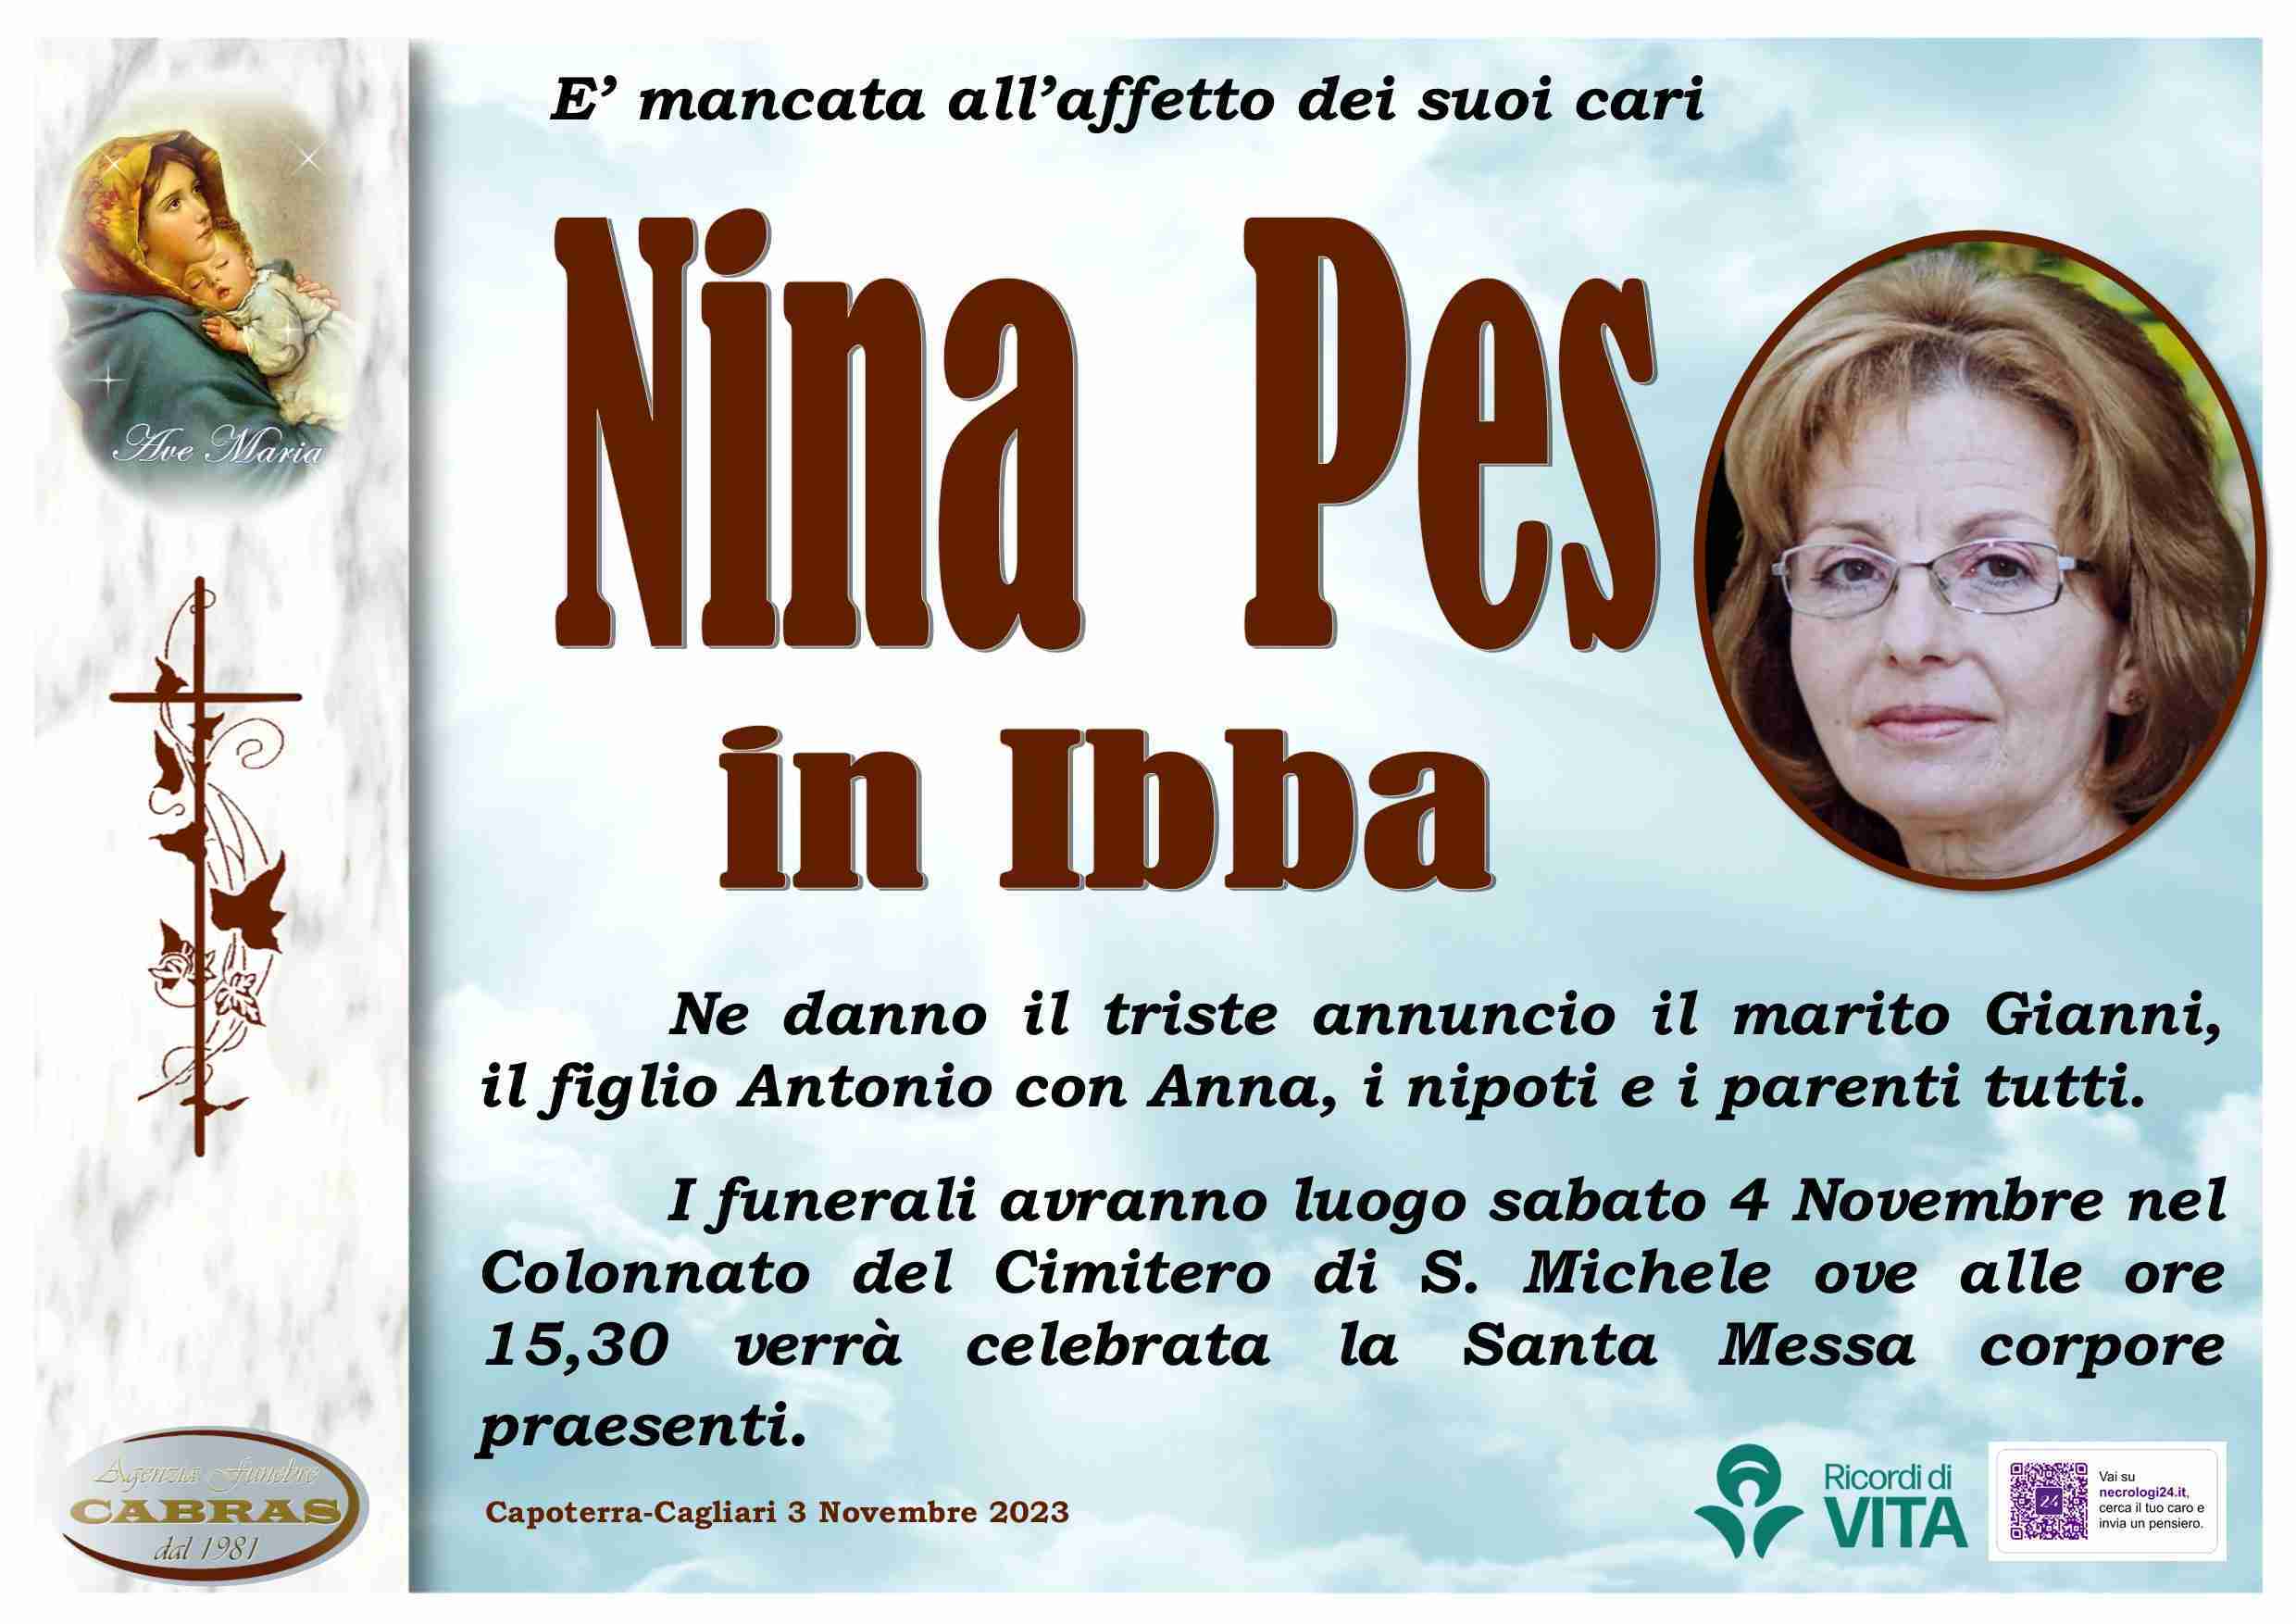 Nina Pes